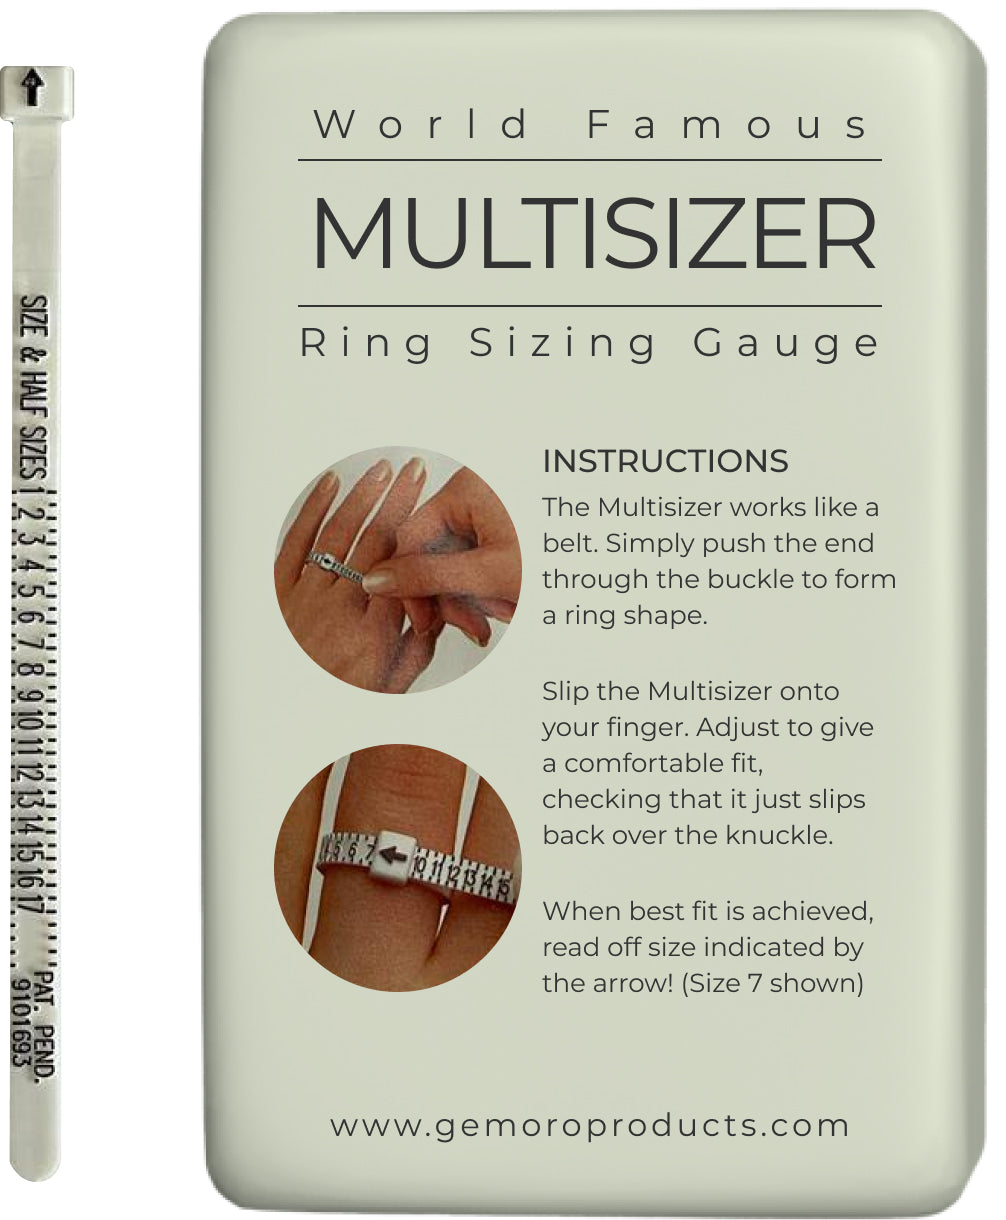 Multisizer Finger Sizing Gauge